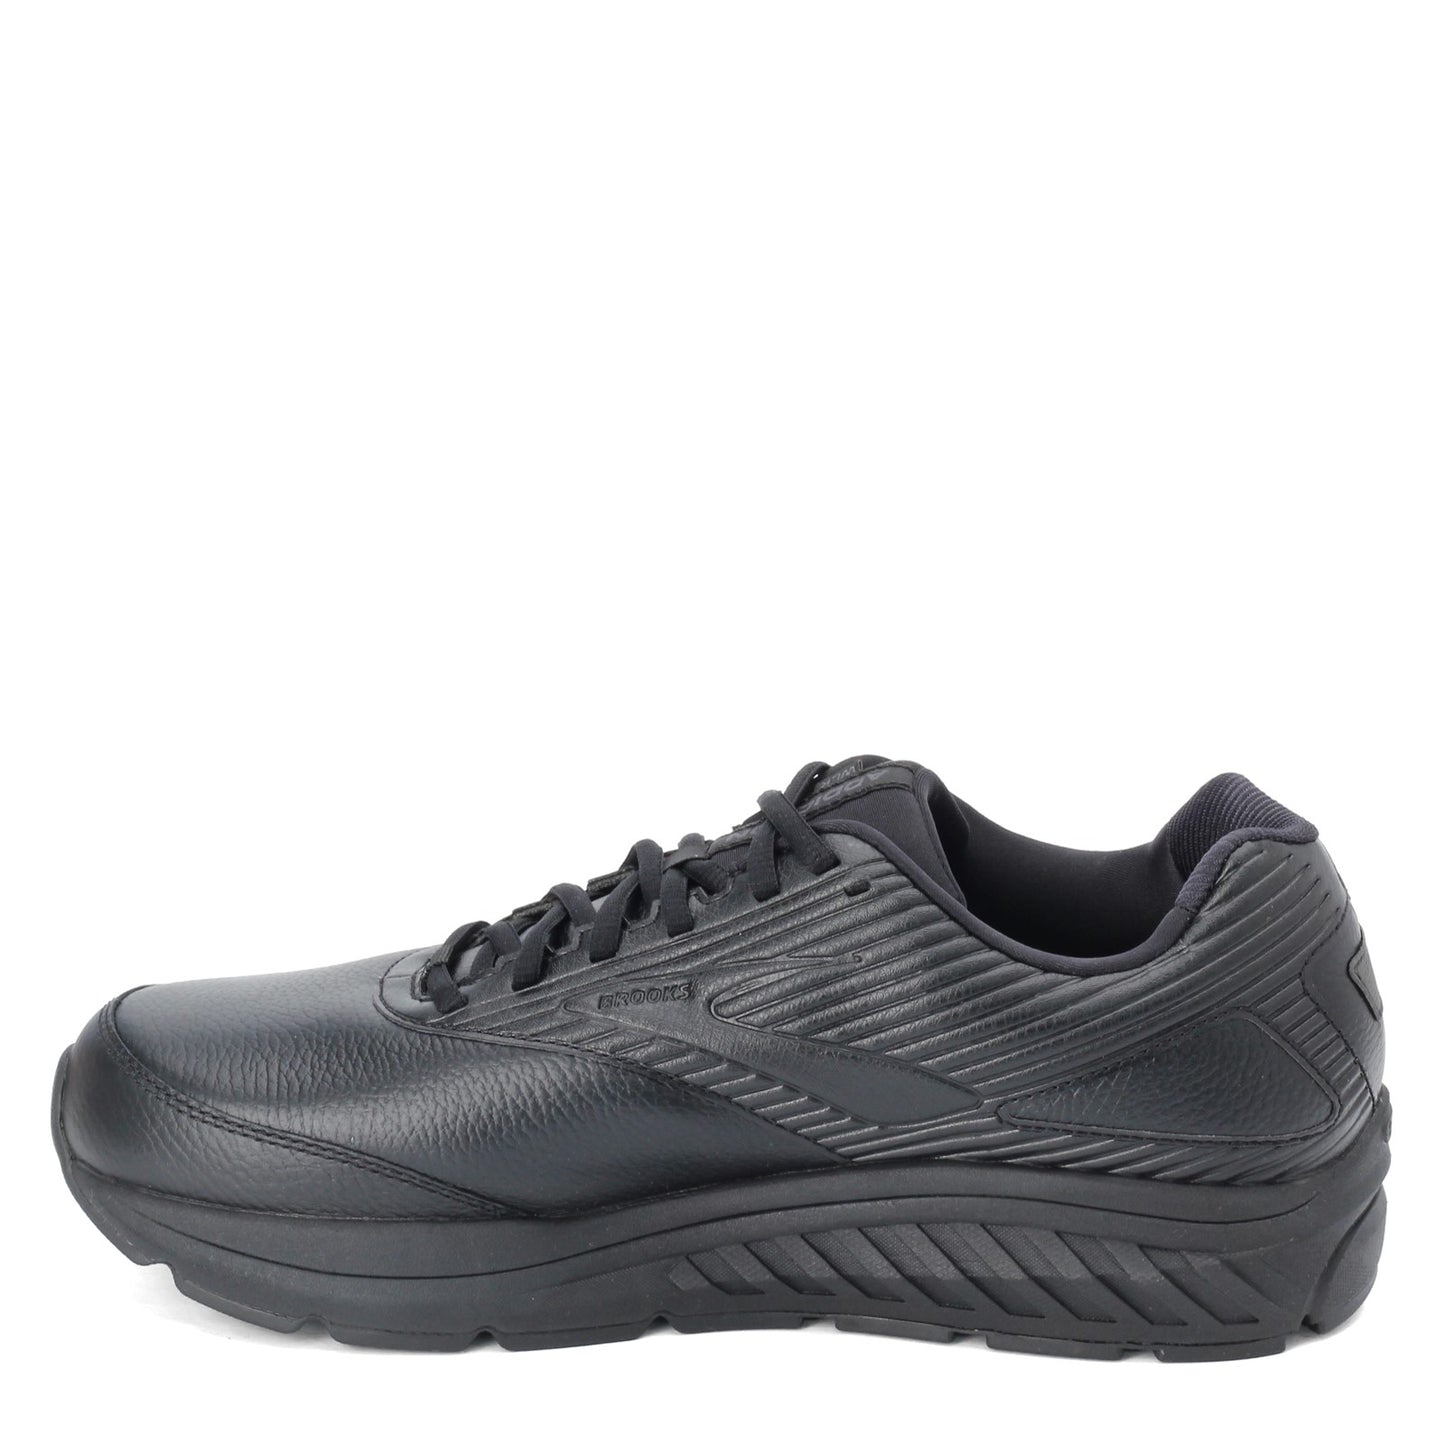 Peltz Shoes  Men's Brooks Addiction Walker 2 Walking Shoe - Wide Width Black/Black 110318 2E 072